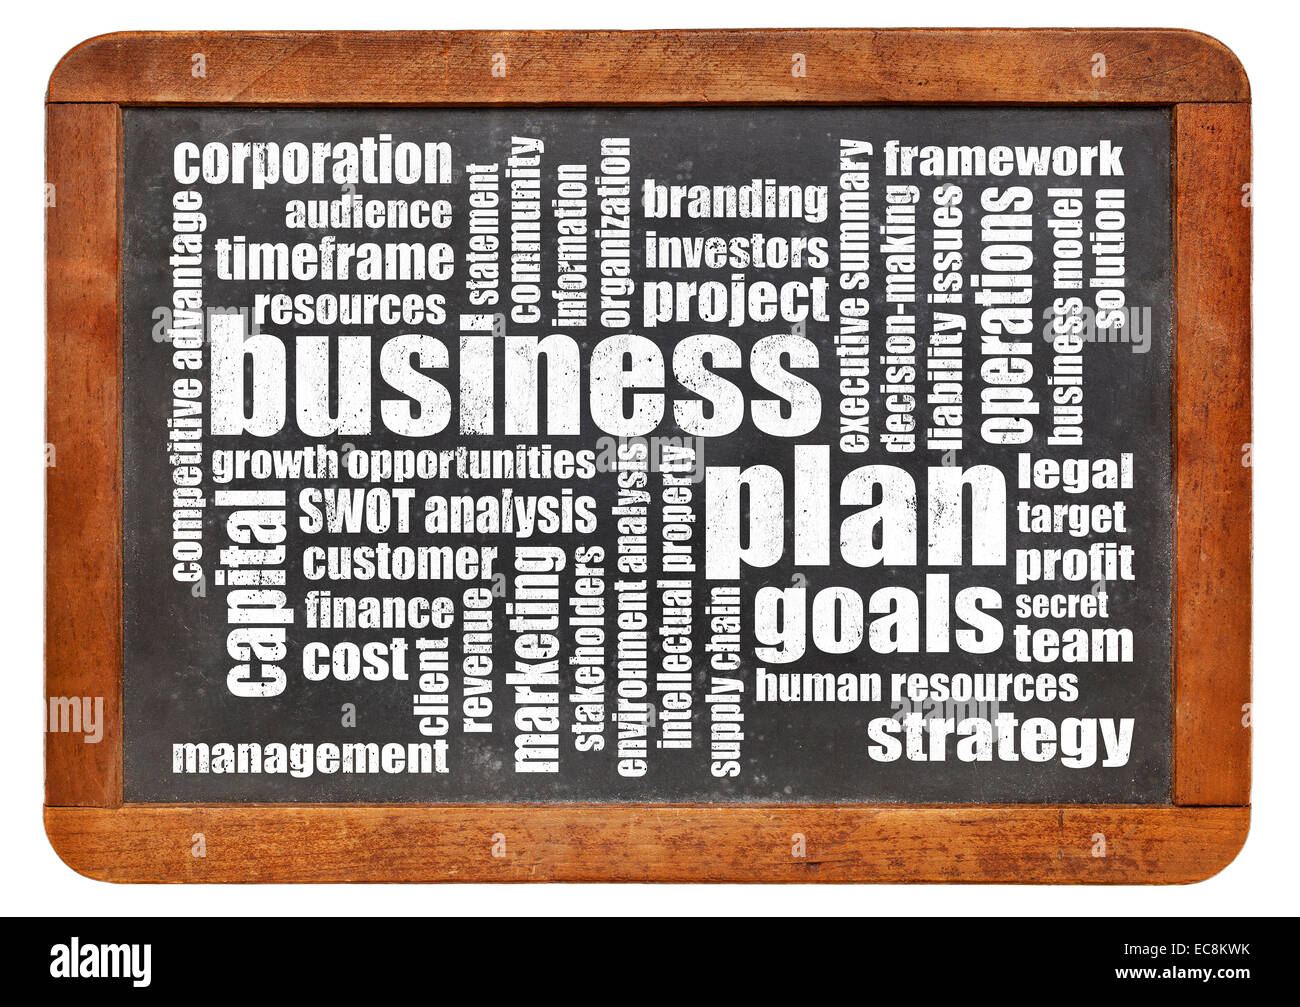 Plan de negocios word cloud en una pizarra pizarra vintage aislado en blanco Foto de stock